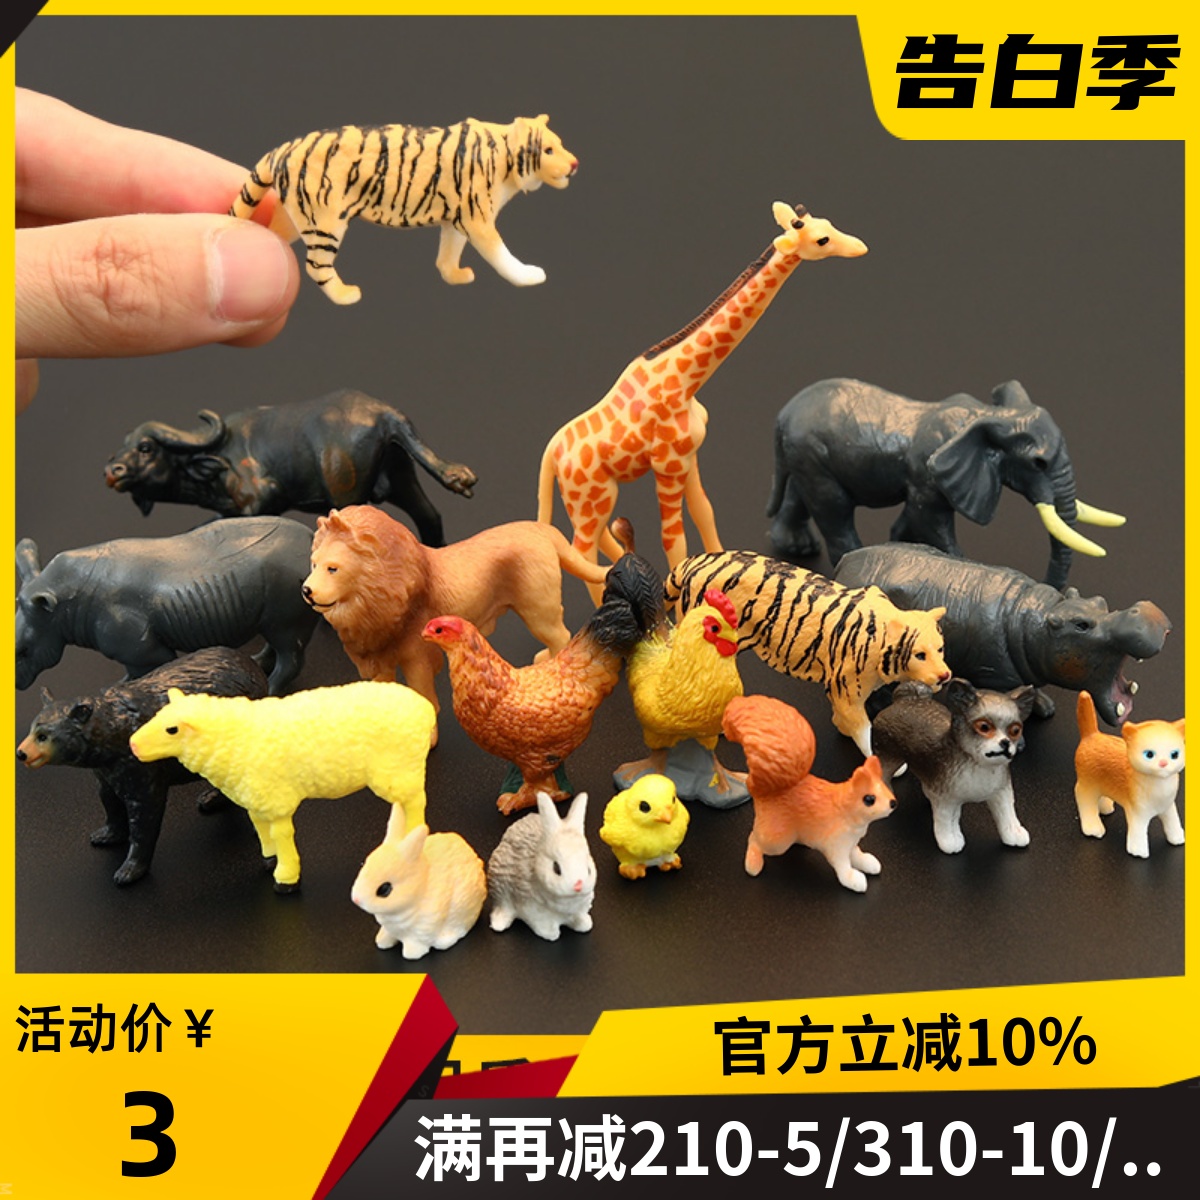 迷你仿真野生动物玩具模型多肉微景观摆件大象狮子老虎滴胶装饰